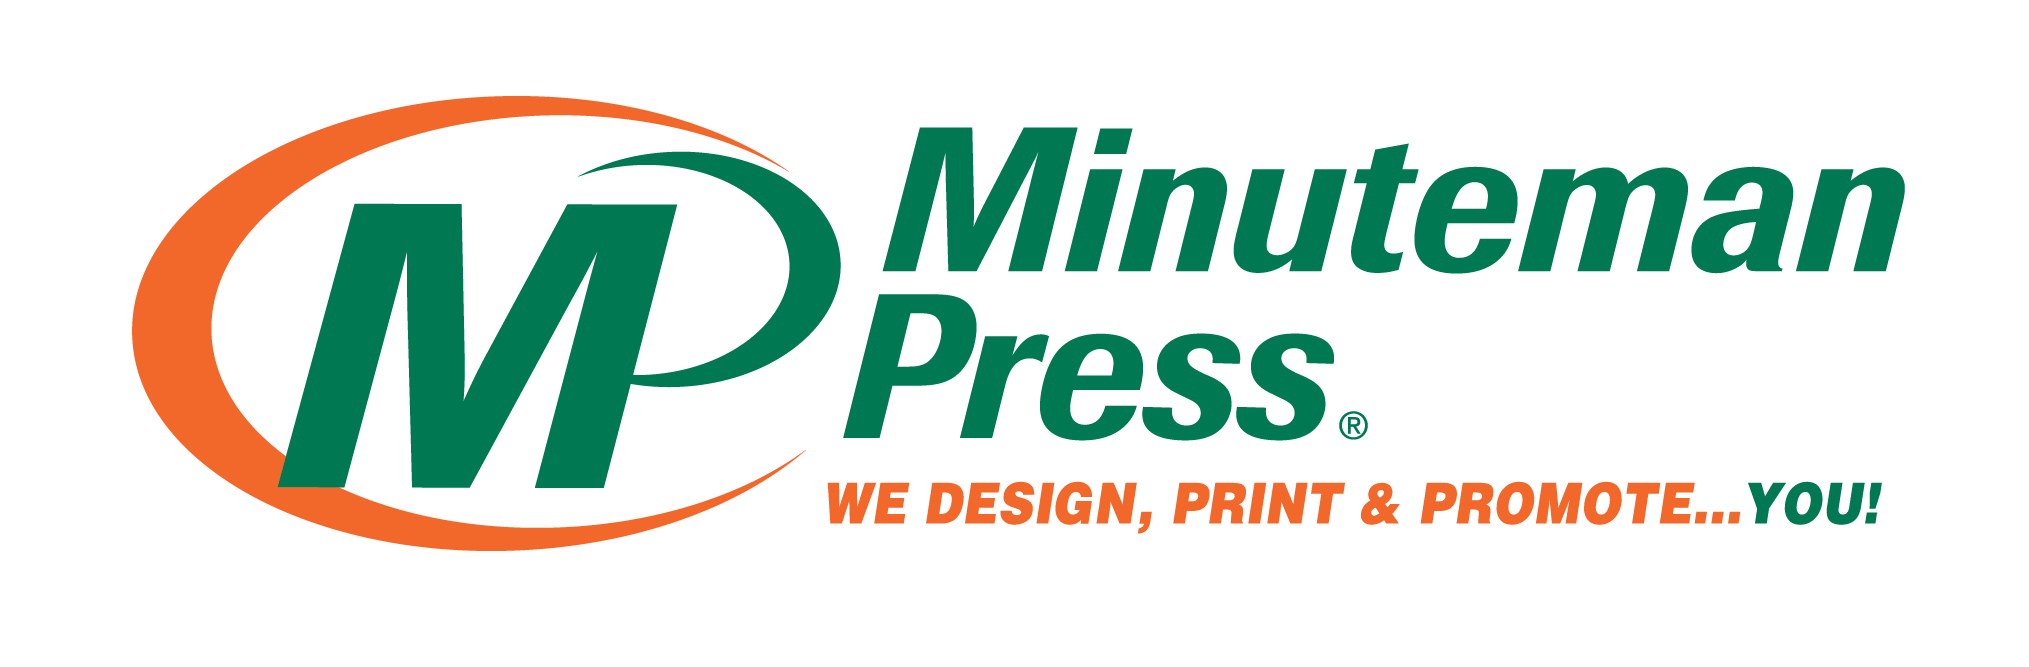 Minuteman Press Macclesfield